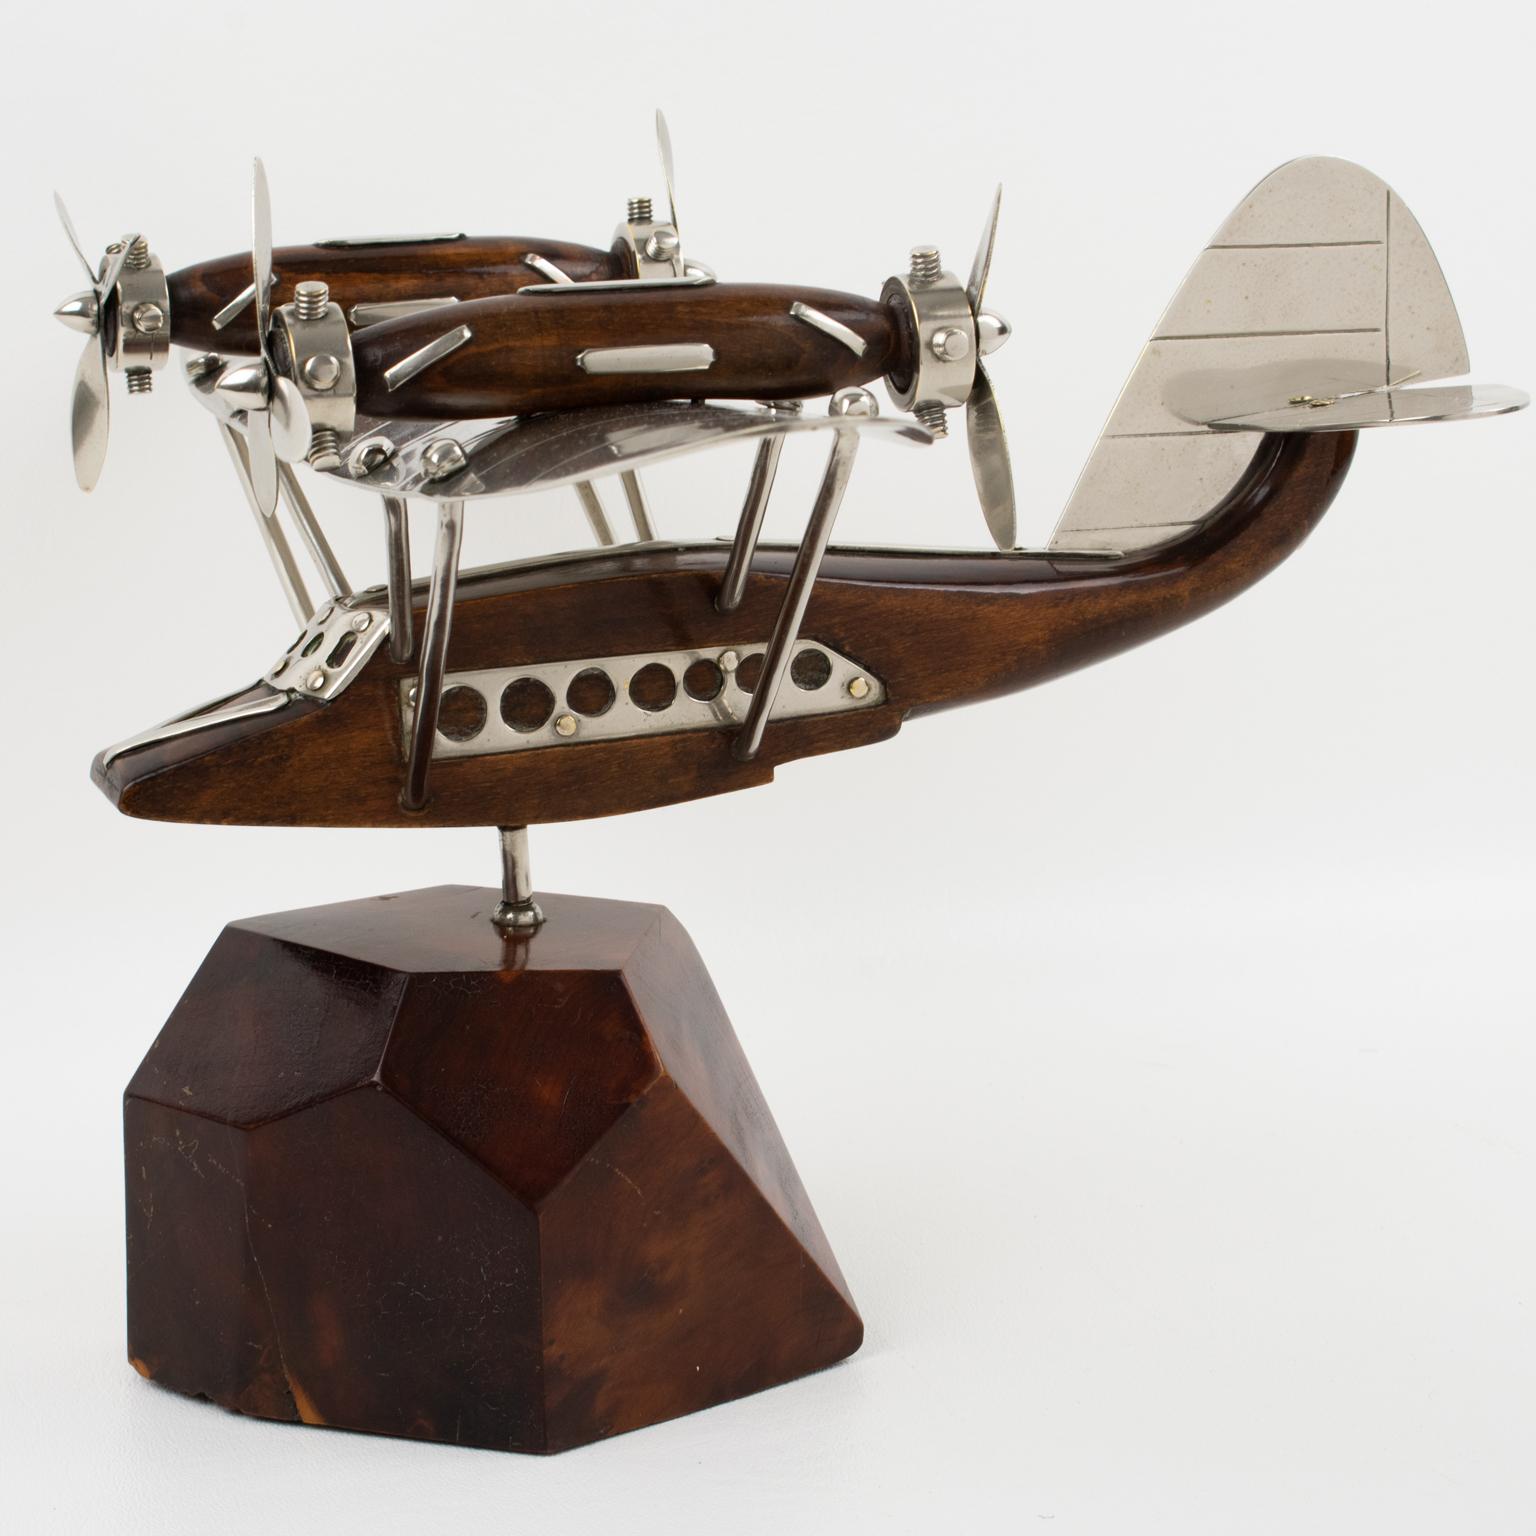 Fantastique maquette d'avion/ d'hydravion en bois et chrome de style Art déco français, montée sur un socle en bois stylisé. Une représentation superbement réalisée du légendaire hydravion à quadri-propulseurs, évocation frappante d'un âge d'or du